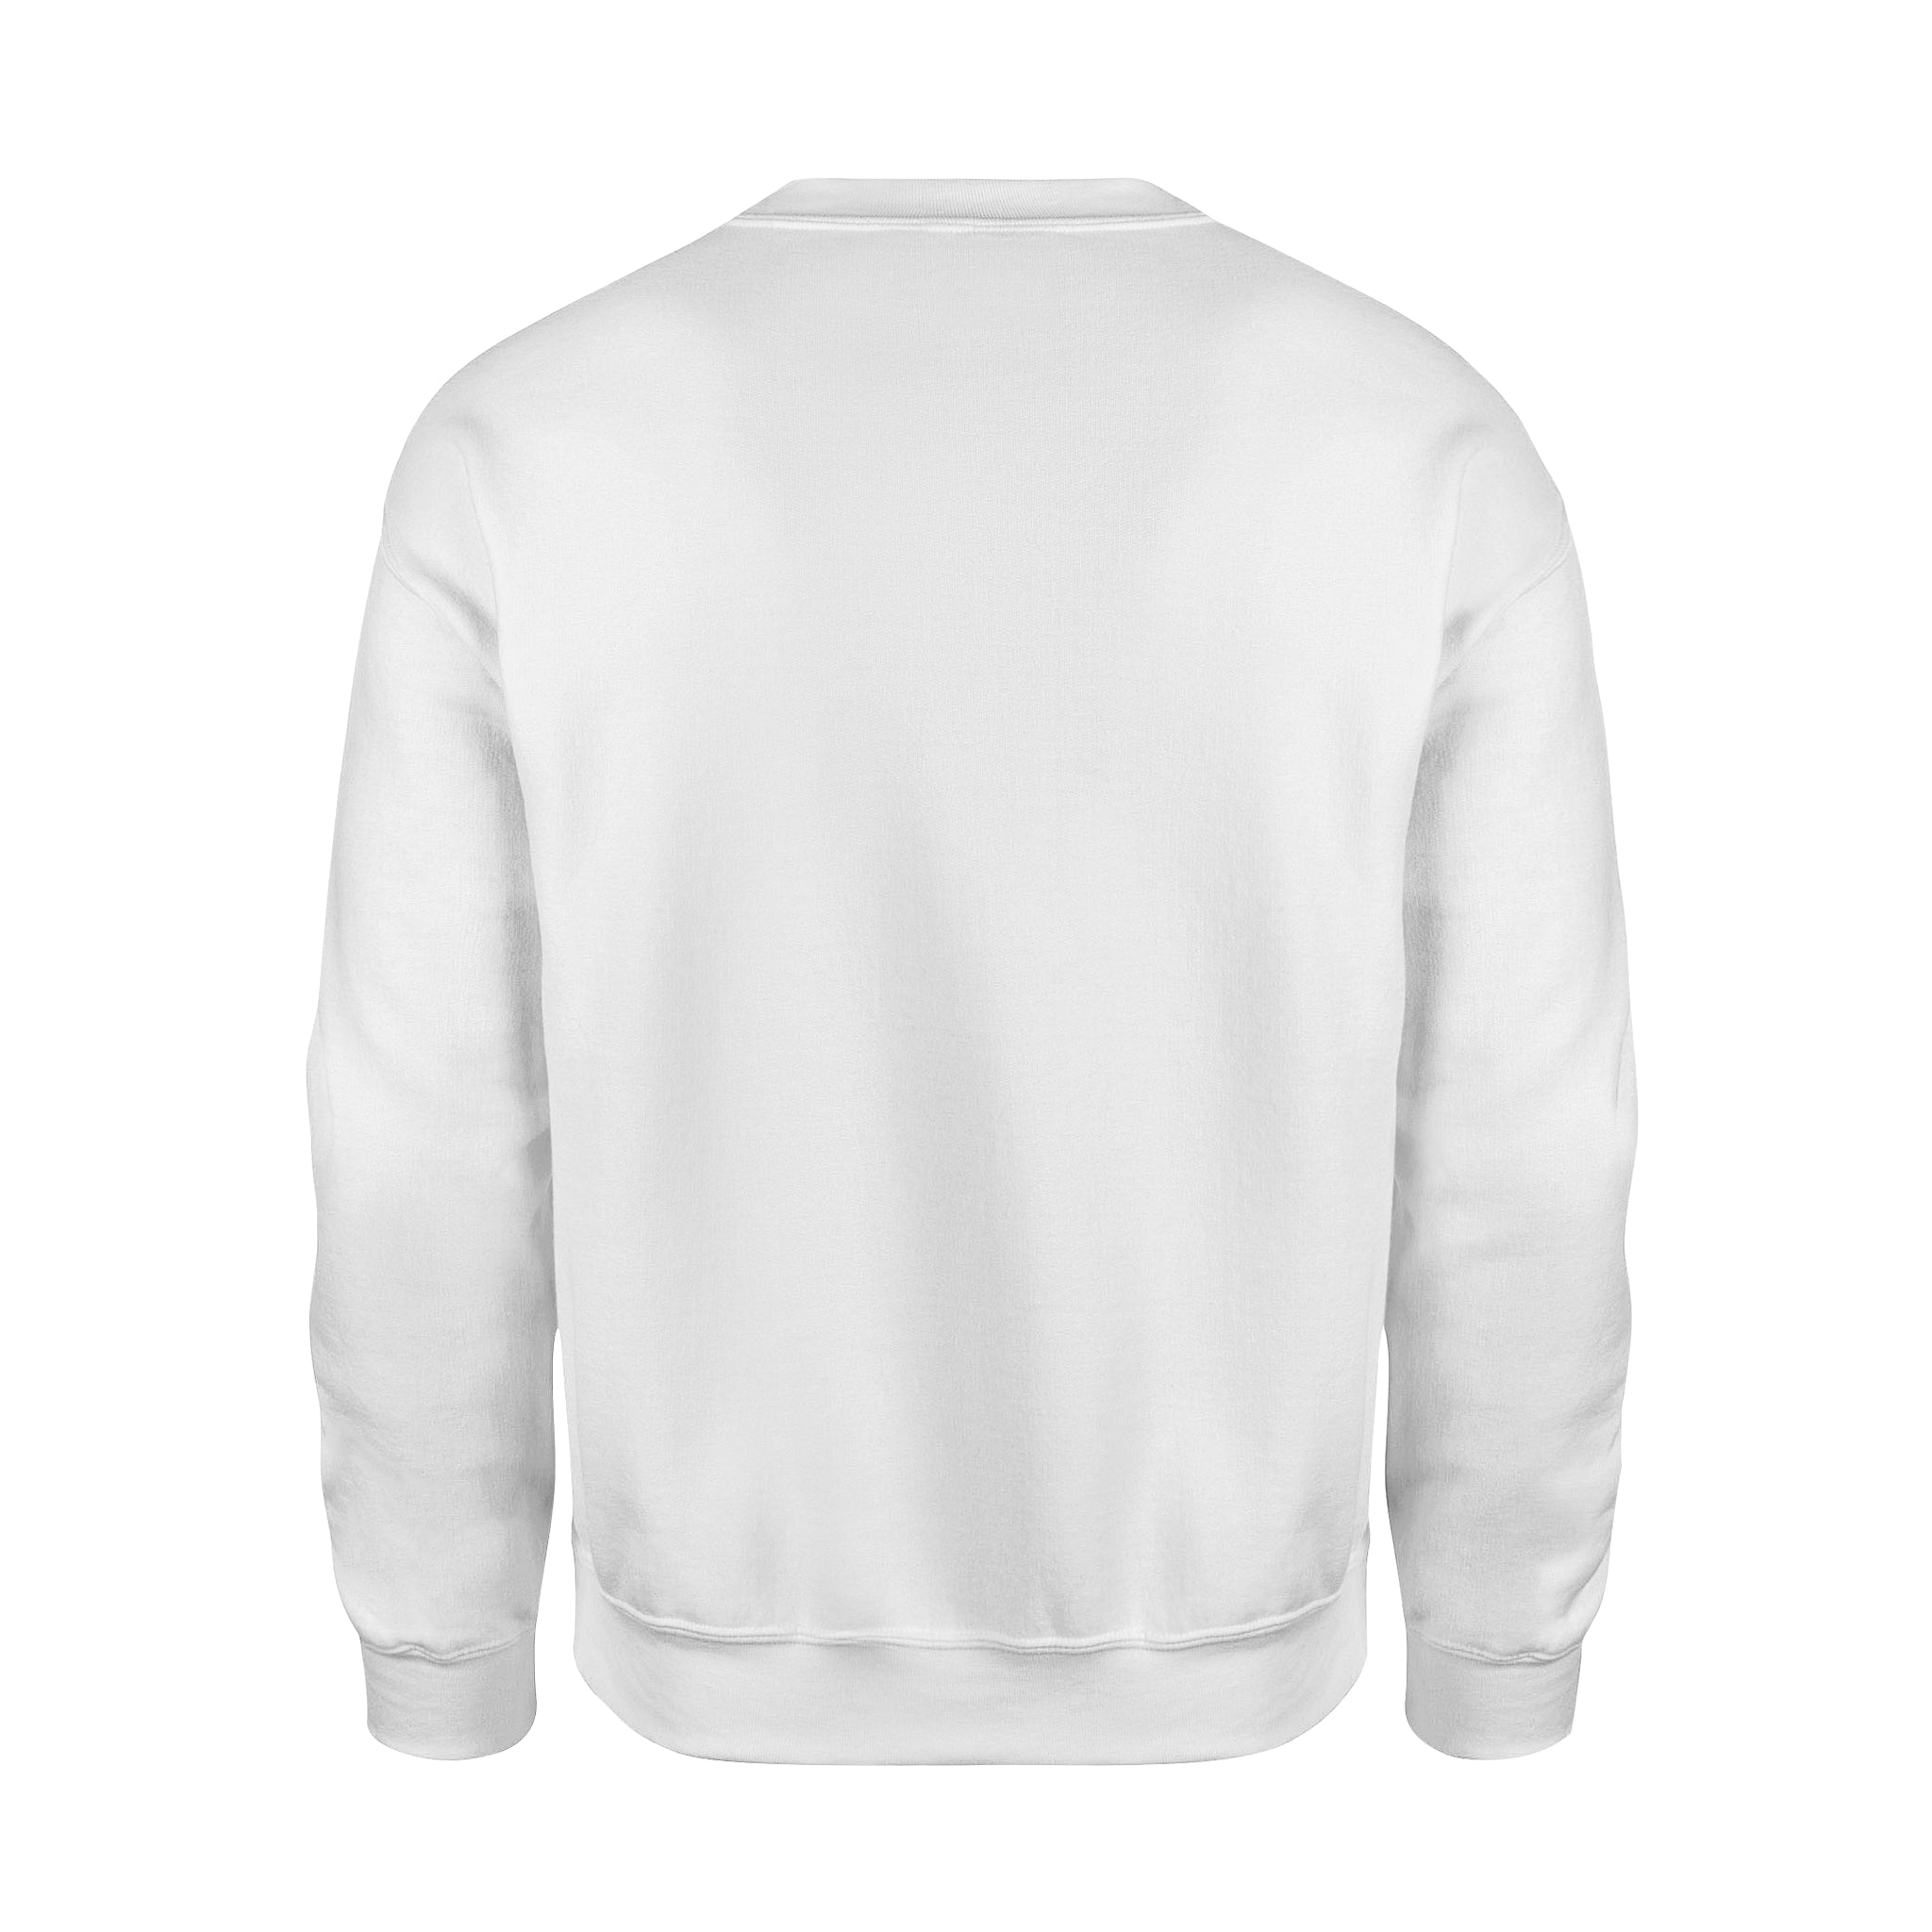 Whatever -  Fleece Sweatshirt